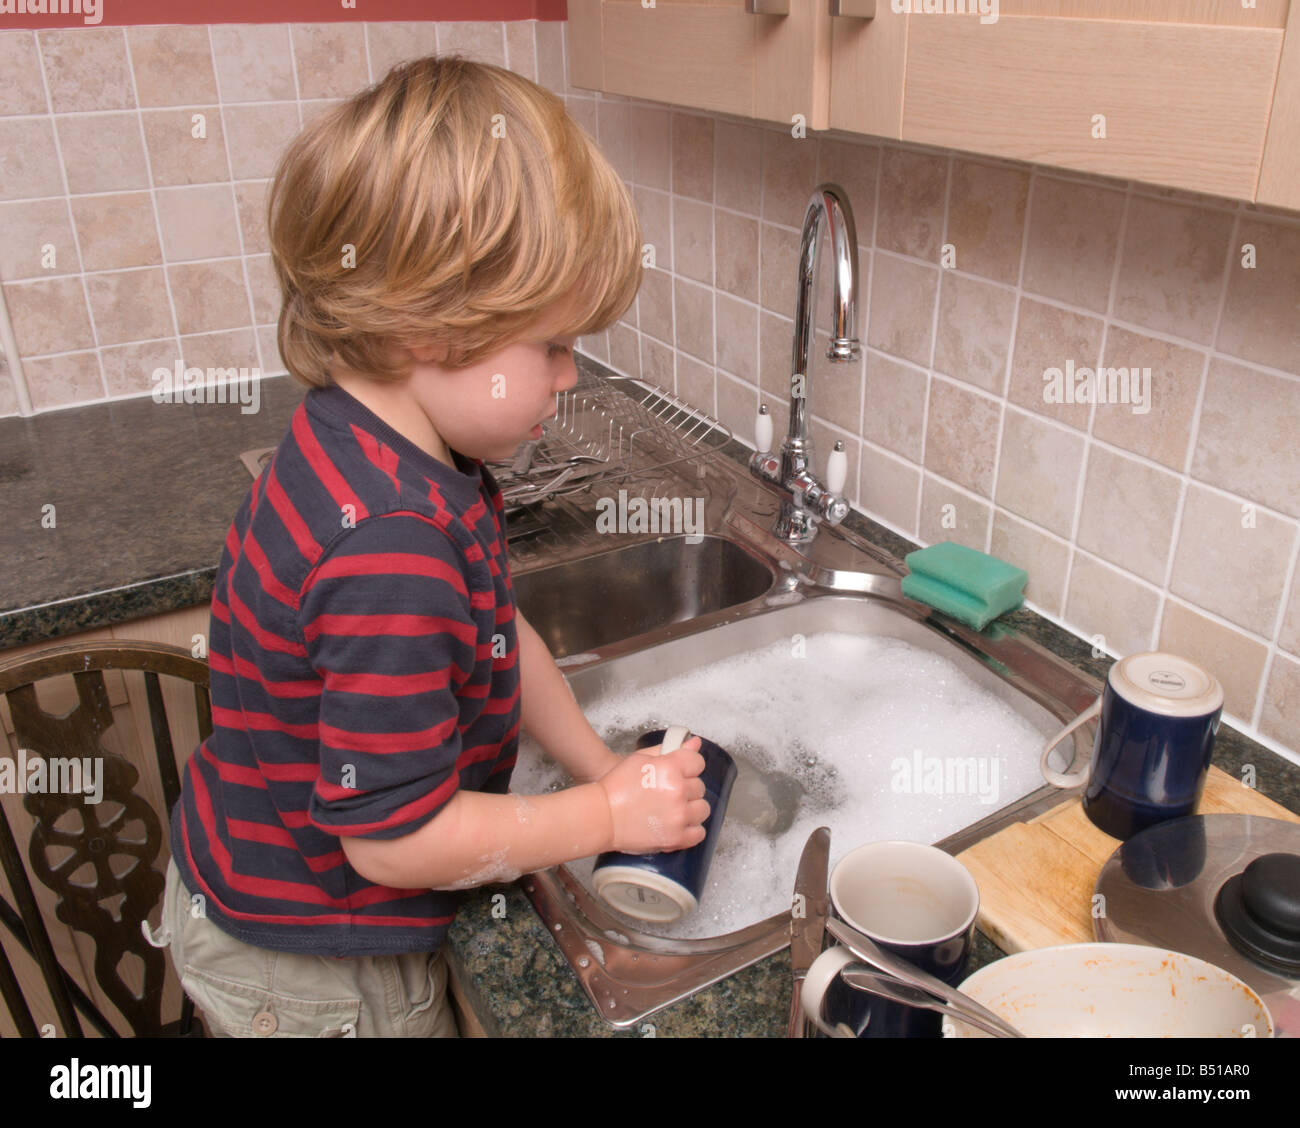 Bébé garçon enfant de l'évier de la cuisine en faisant la vaisselle avec  eau chaude robinet ouvert Photo Stock - Alamy